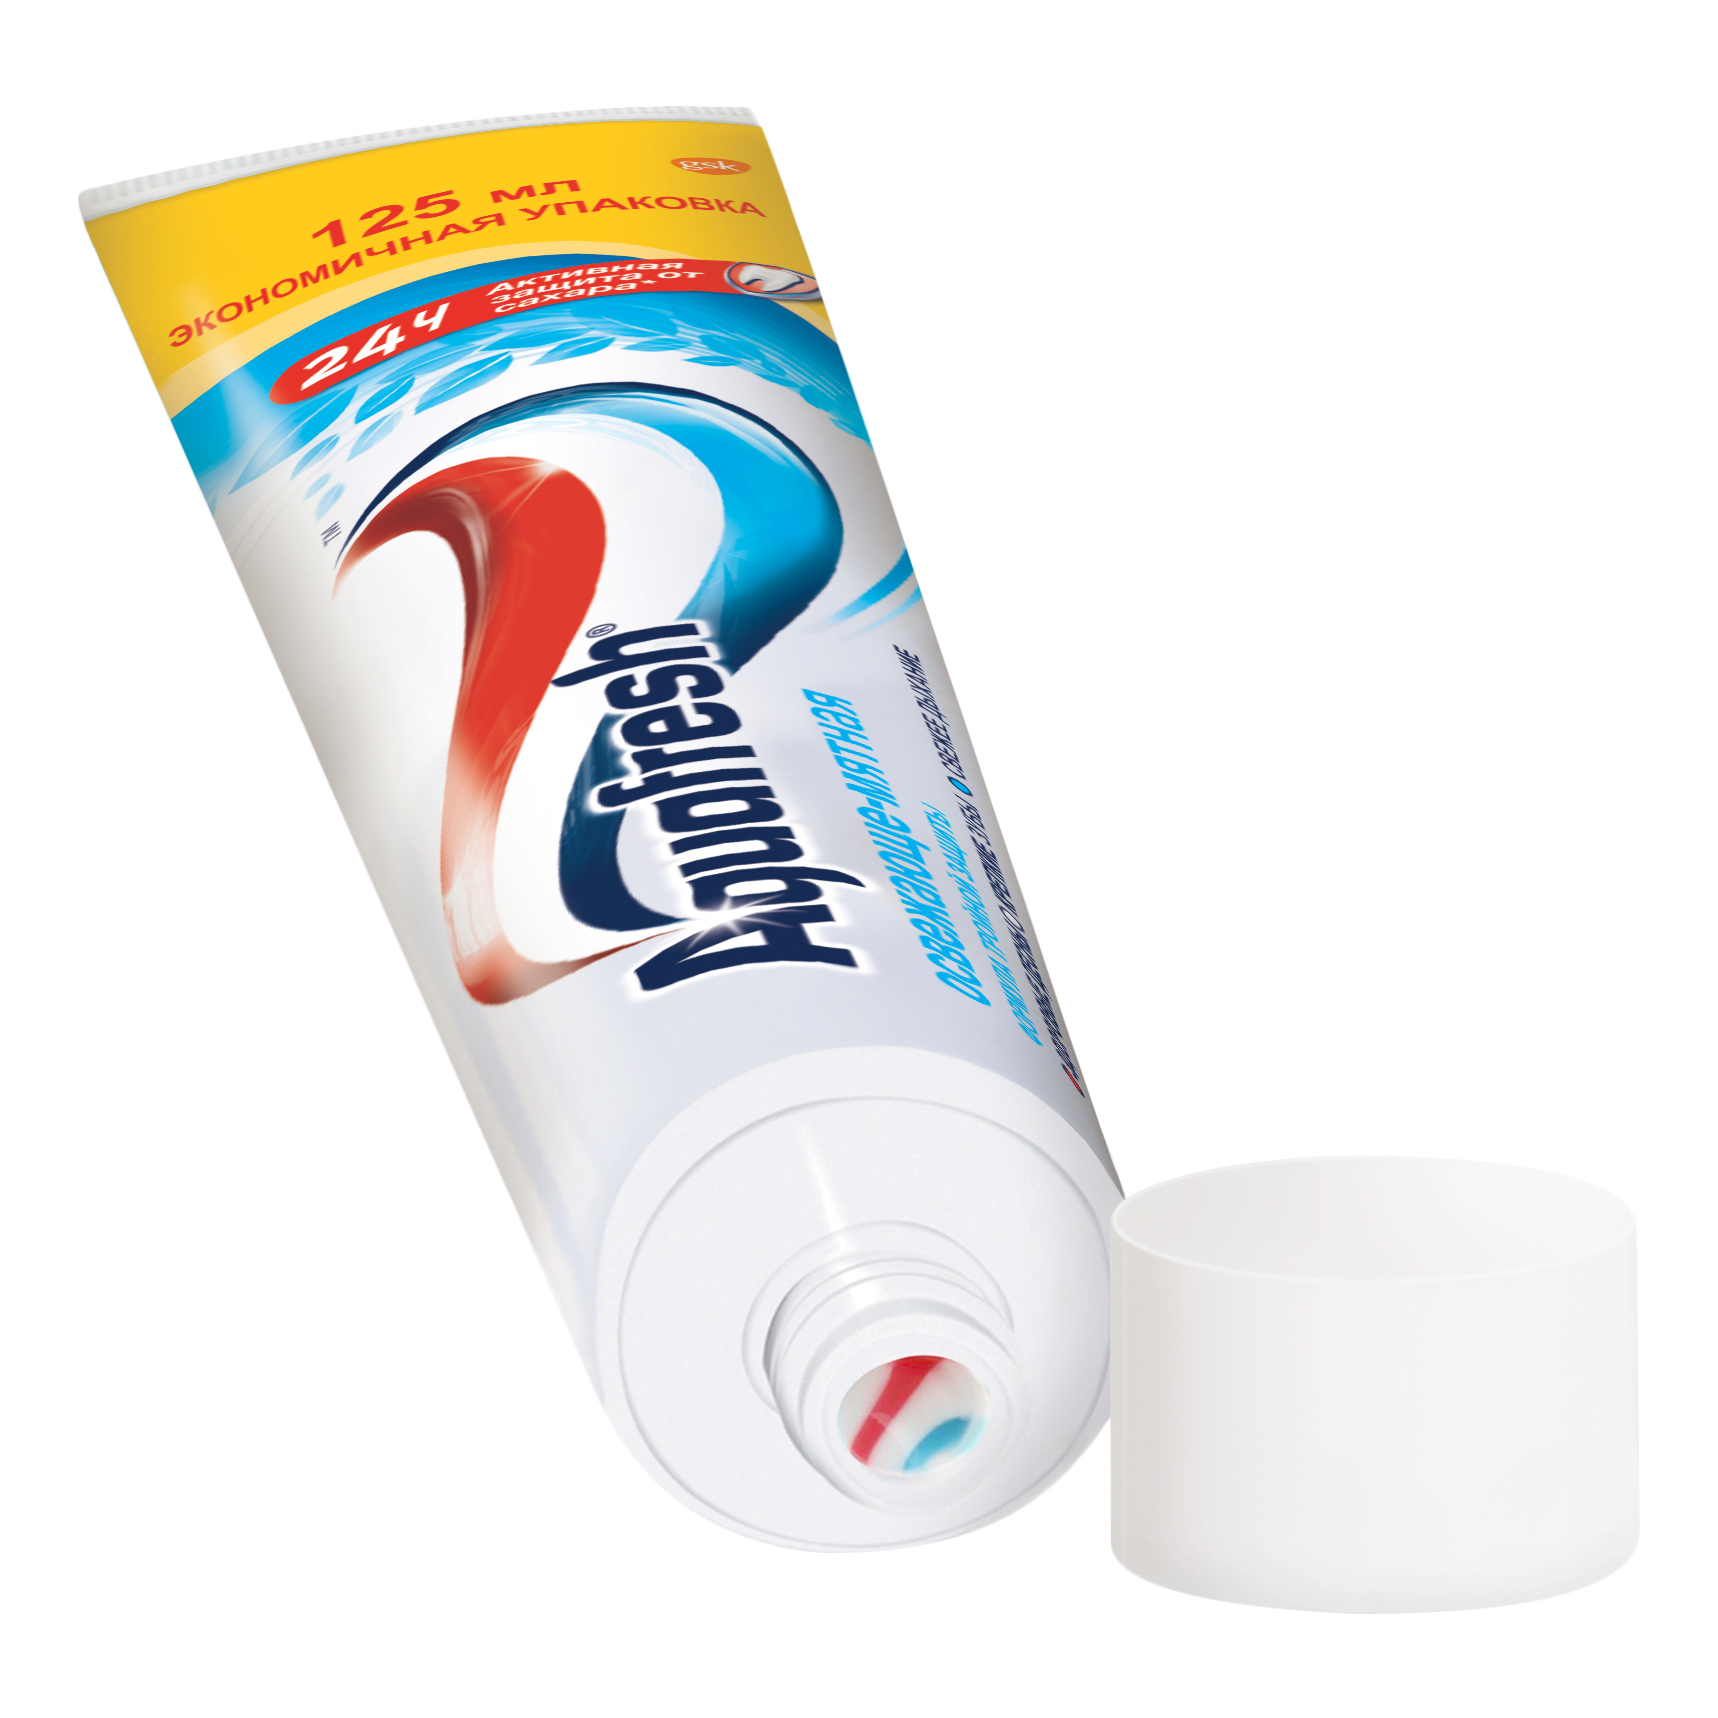 Зубная паста Aquafresh Тройная защита Освежающе-мятная, 125 мл